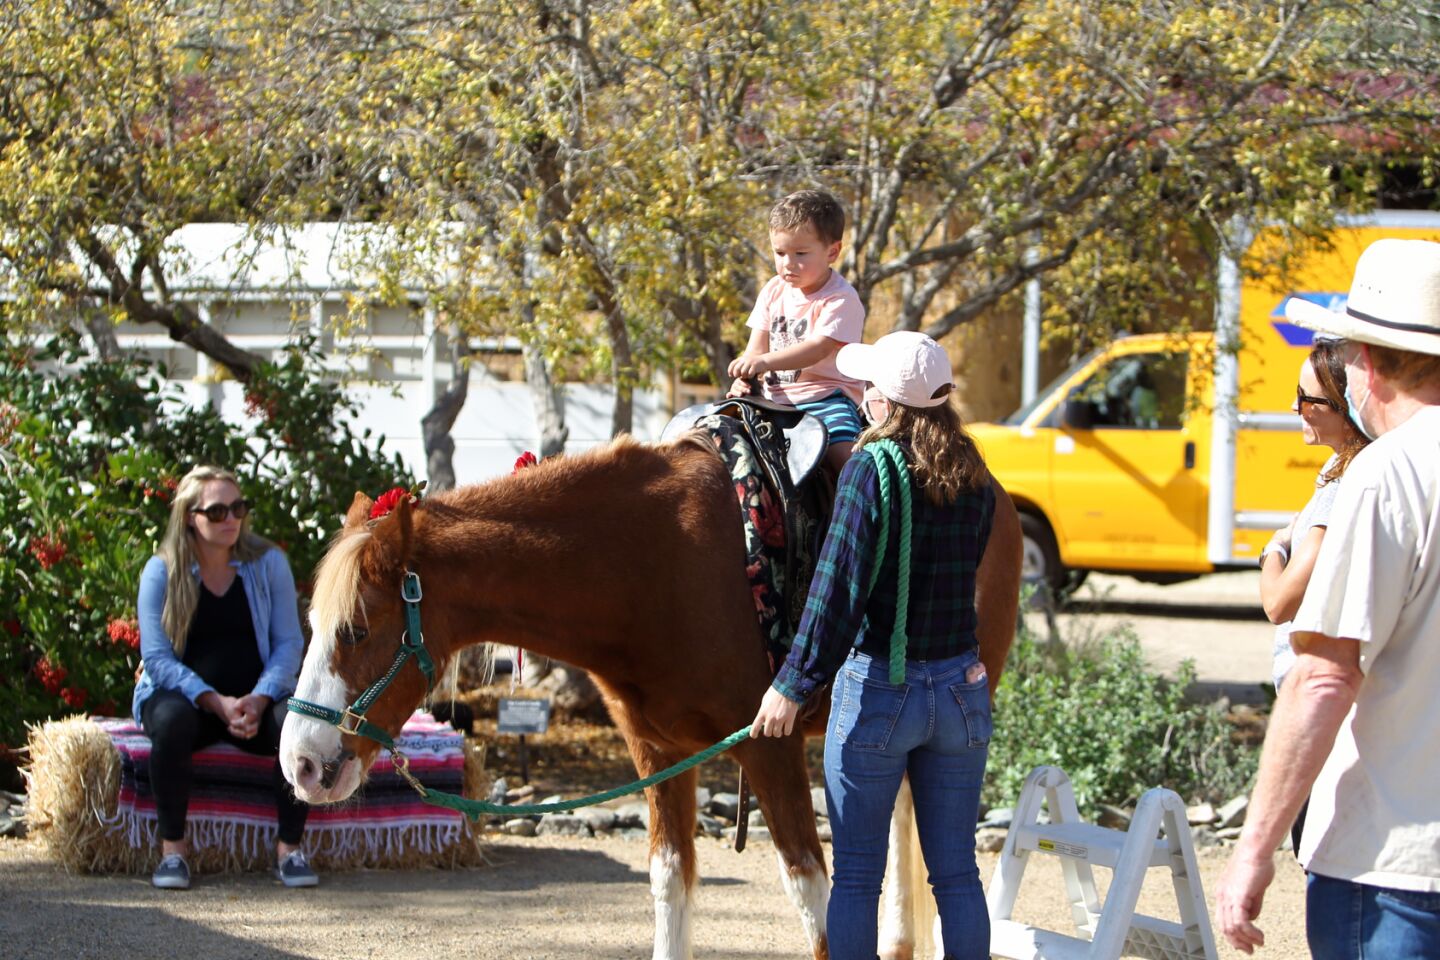 Will Sondag rides Rosie the horse